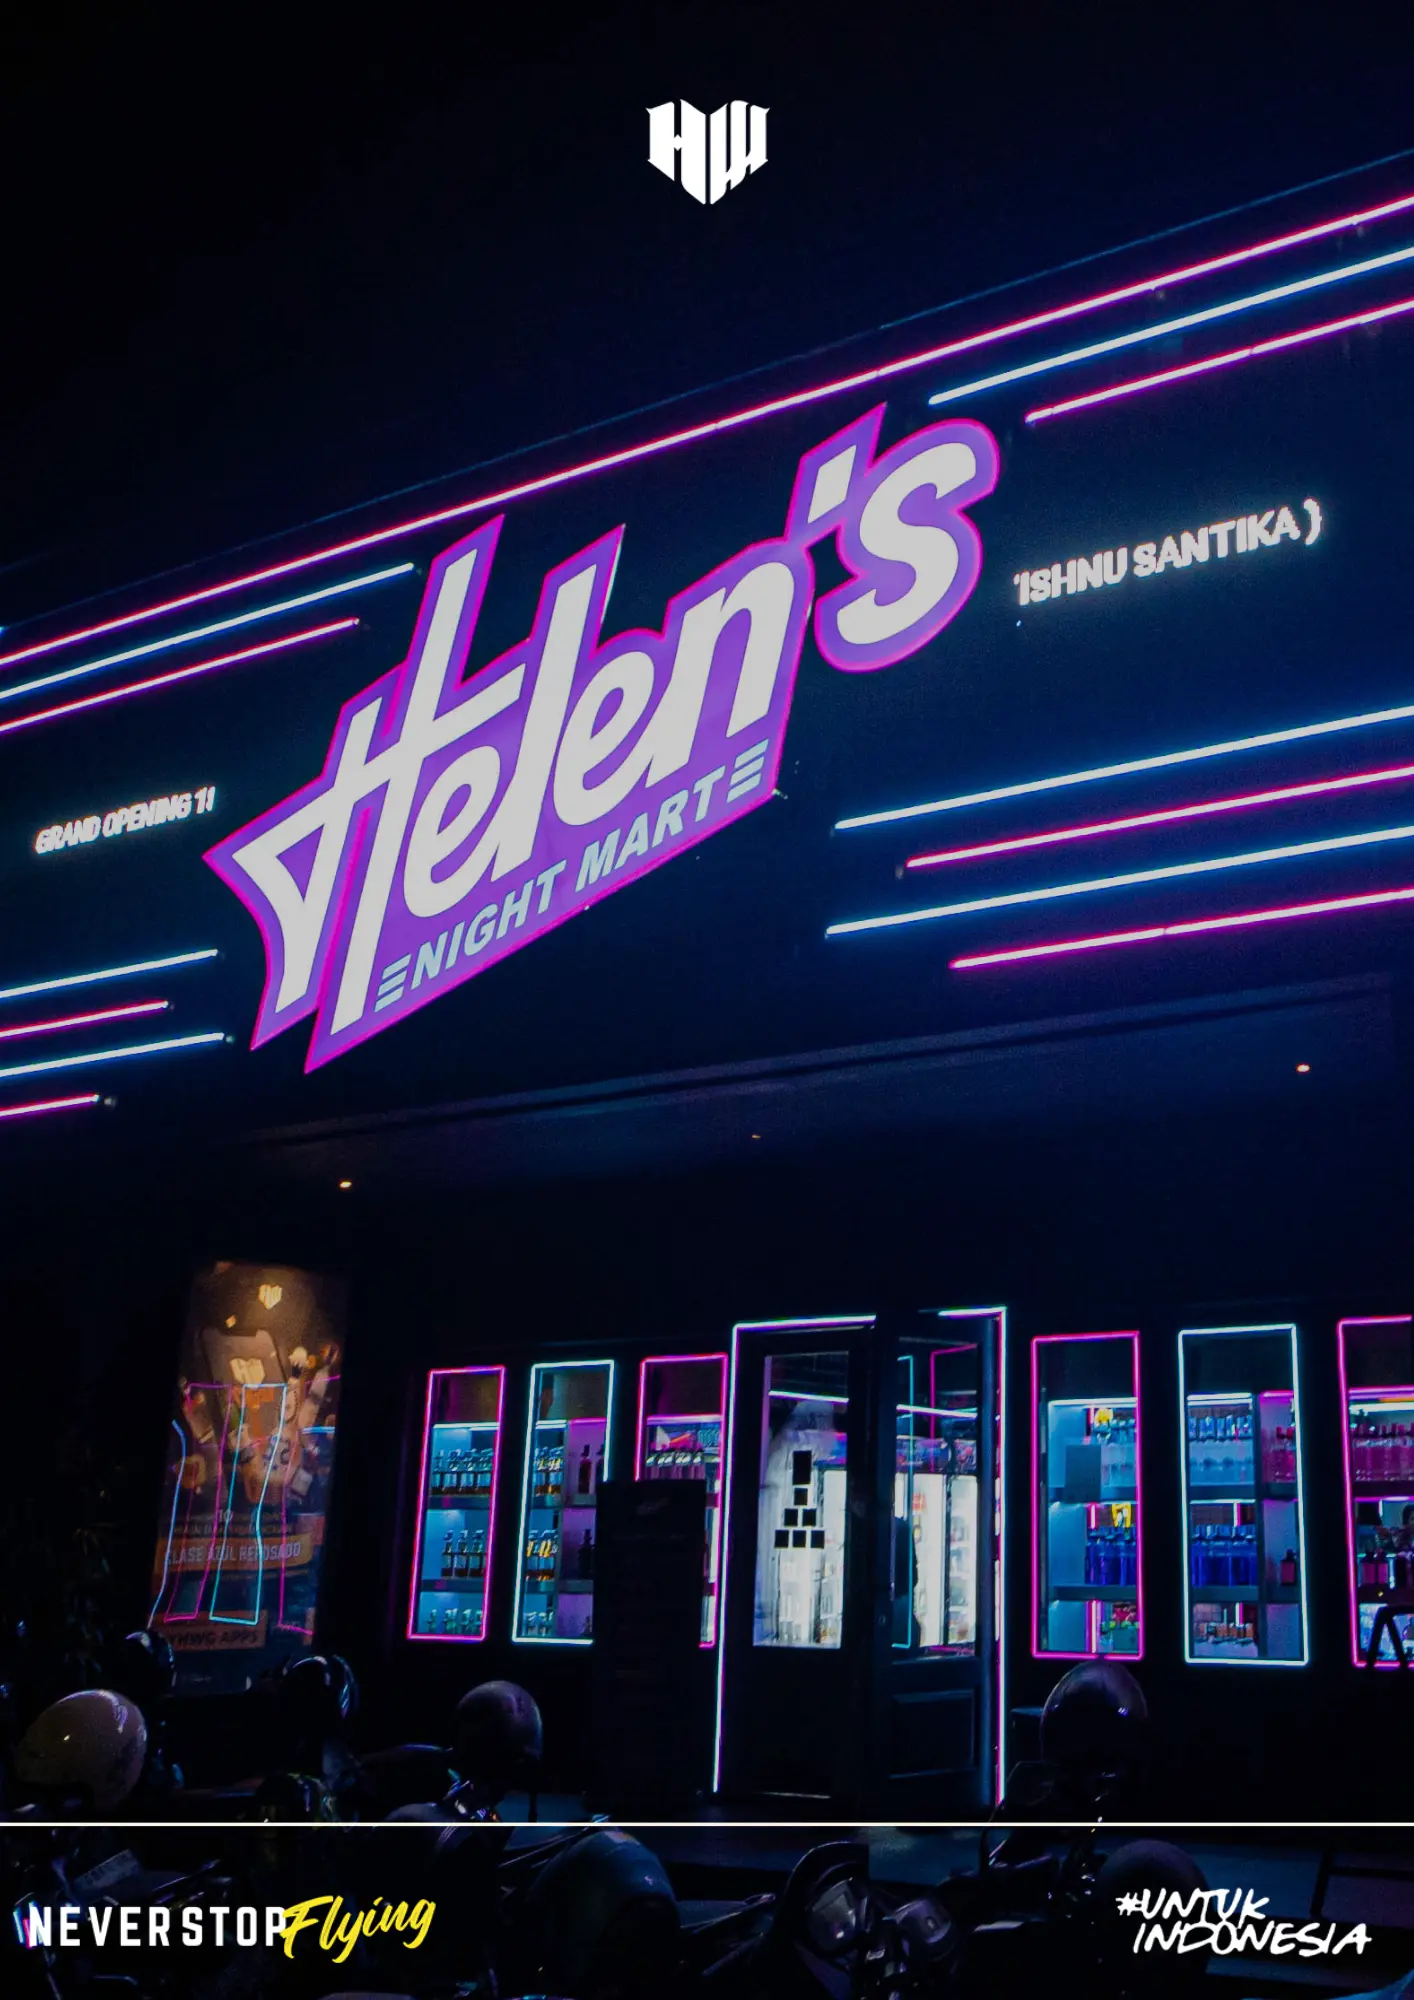 Helen’s Night Mart Opens in Surabaya, Featuring Karaoke with Stanley Hao